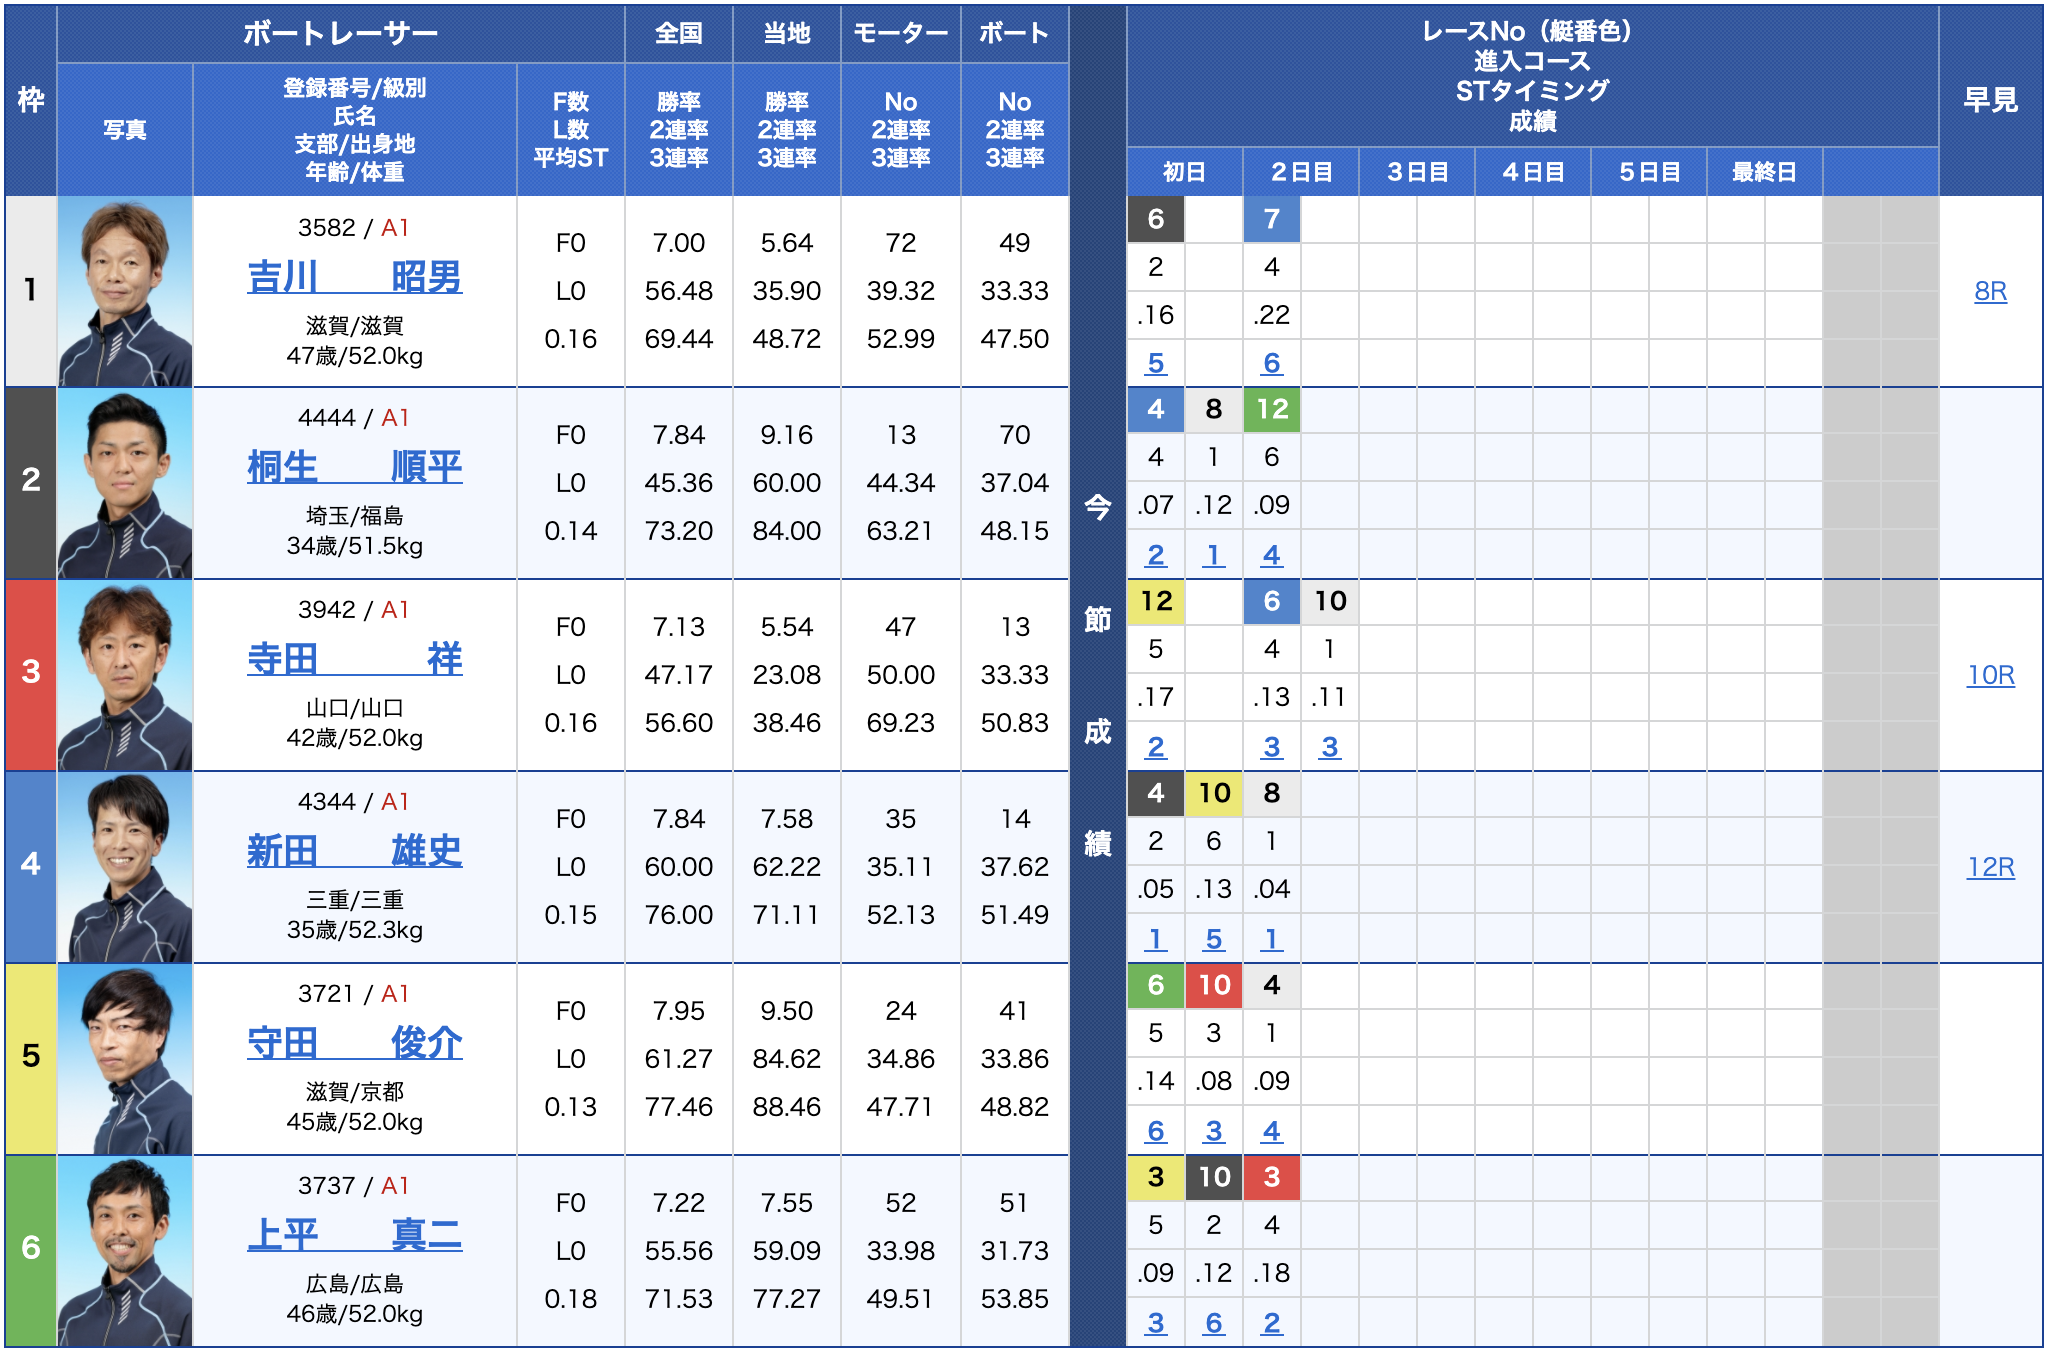 江戸川 競艇 レース リプレイ